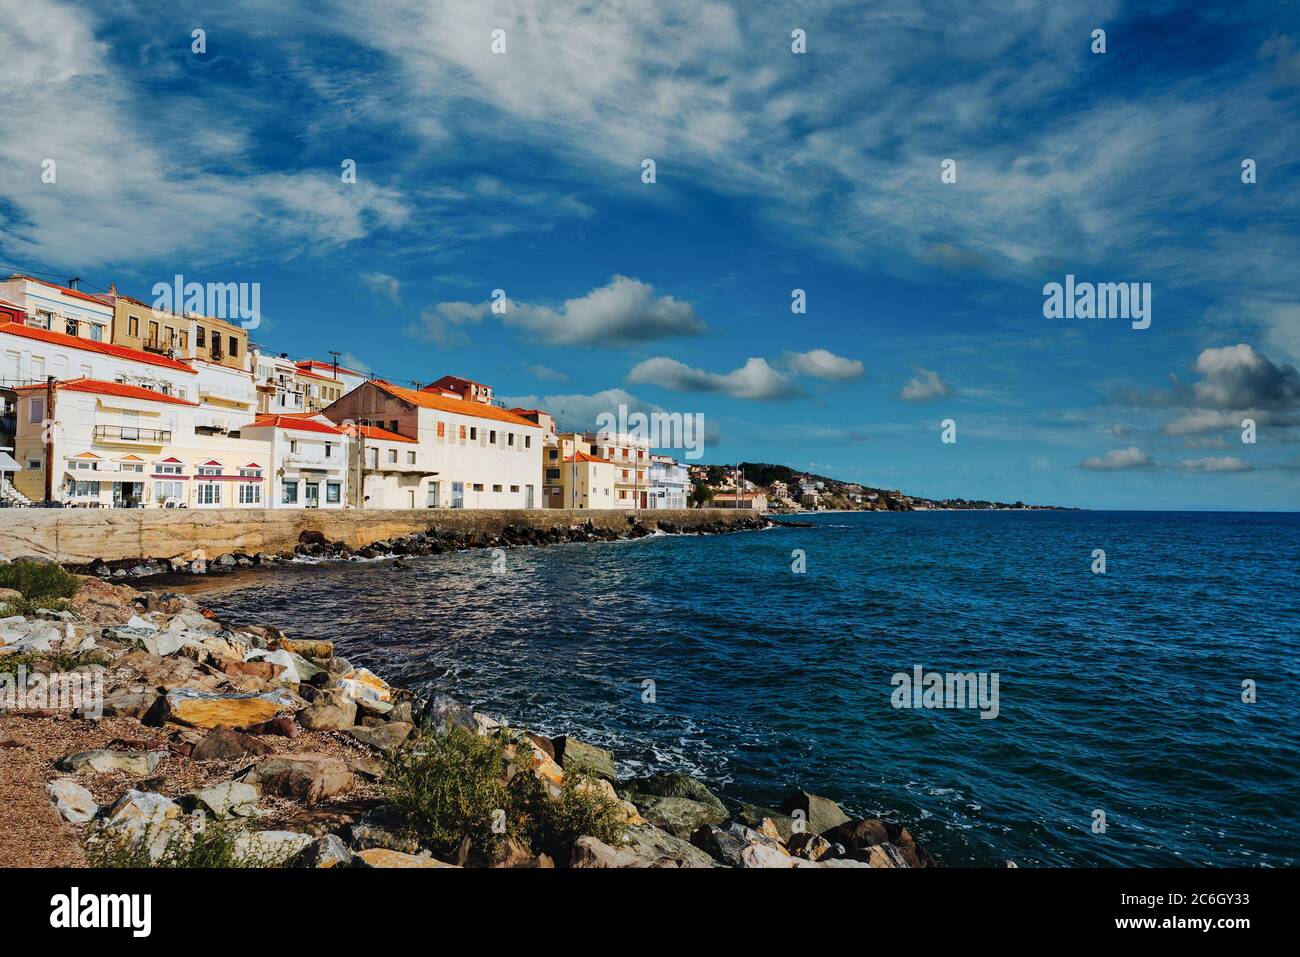 Scenic coastal village of Plomari (Plomarion) on beautiful island Lesvos (Lesbos) in Greece. Stock Photo